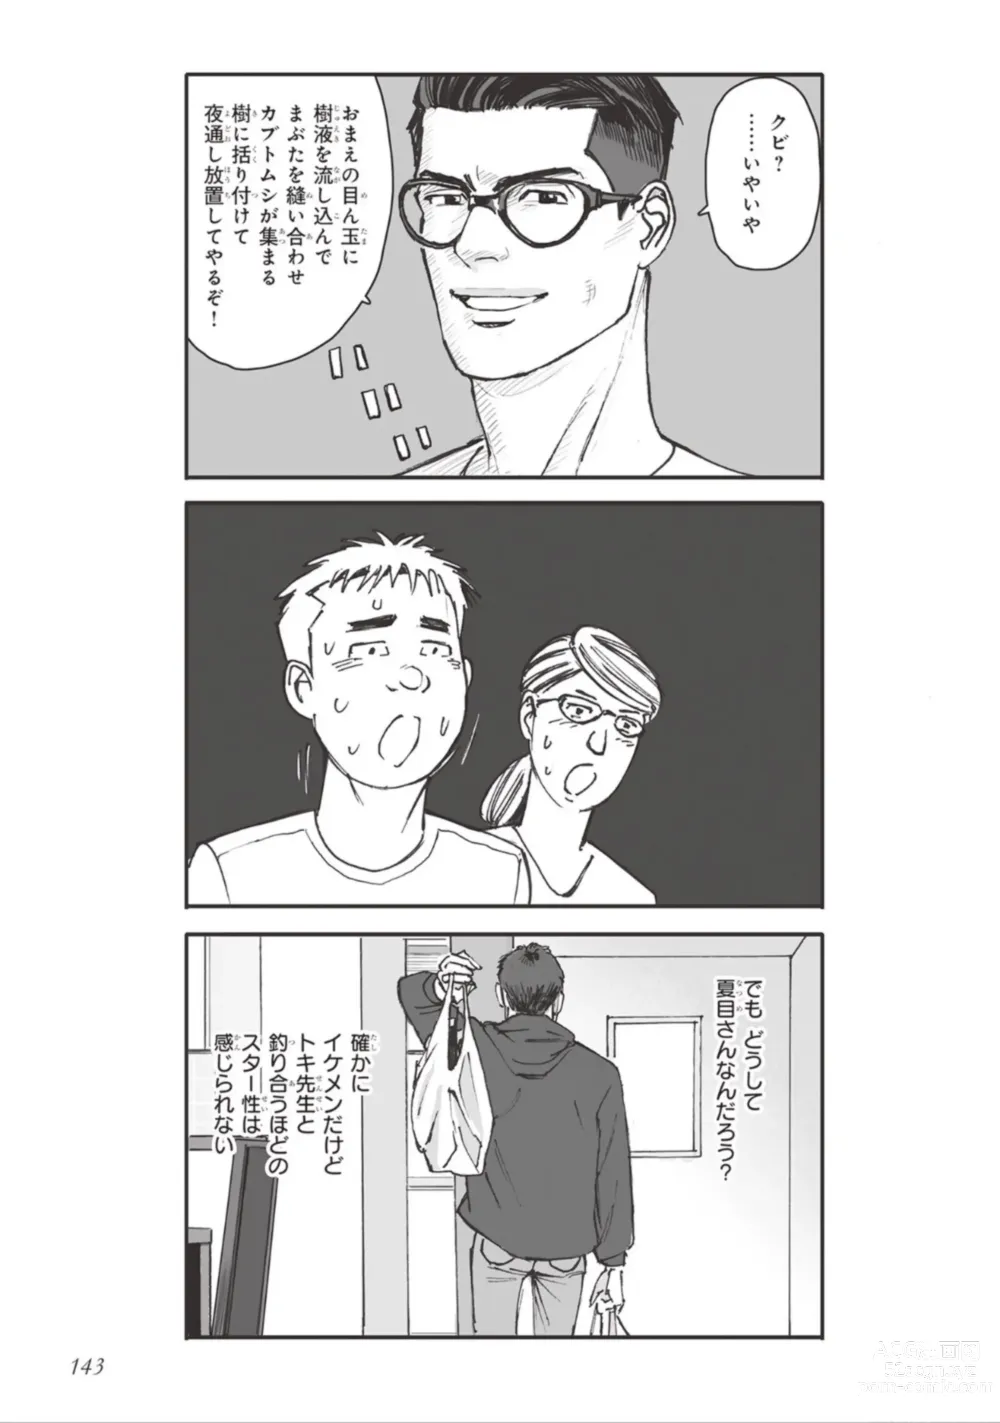 Page 145 of manga Bara to Tanpopo - Rose & Dandelion Jou